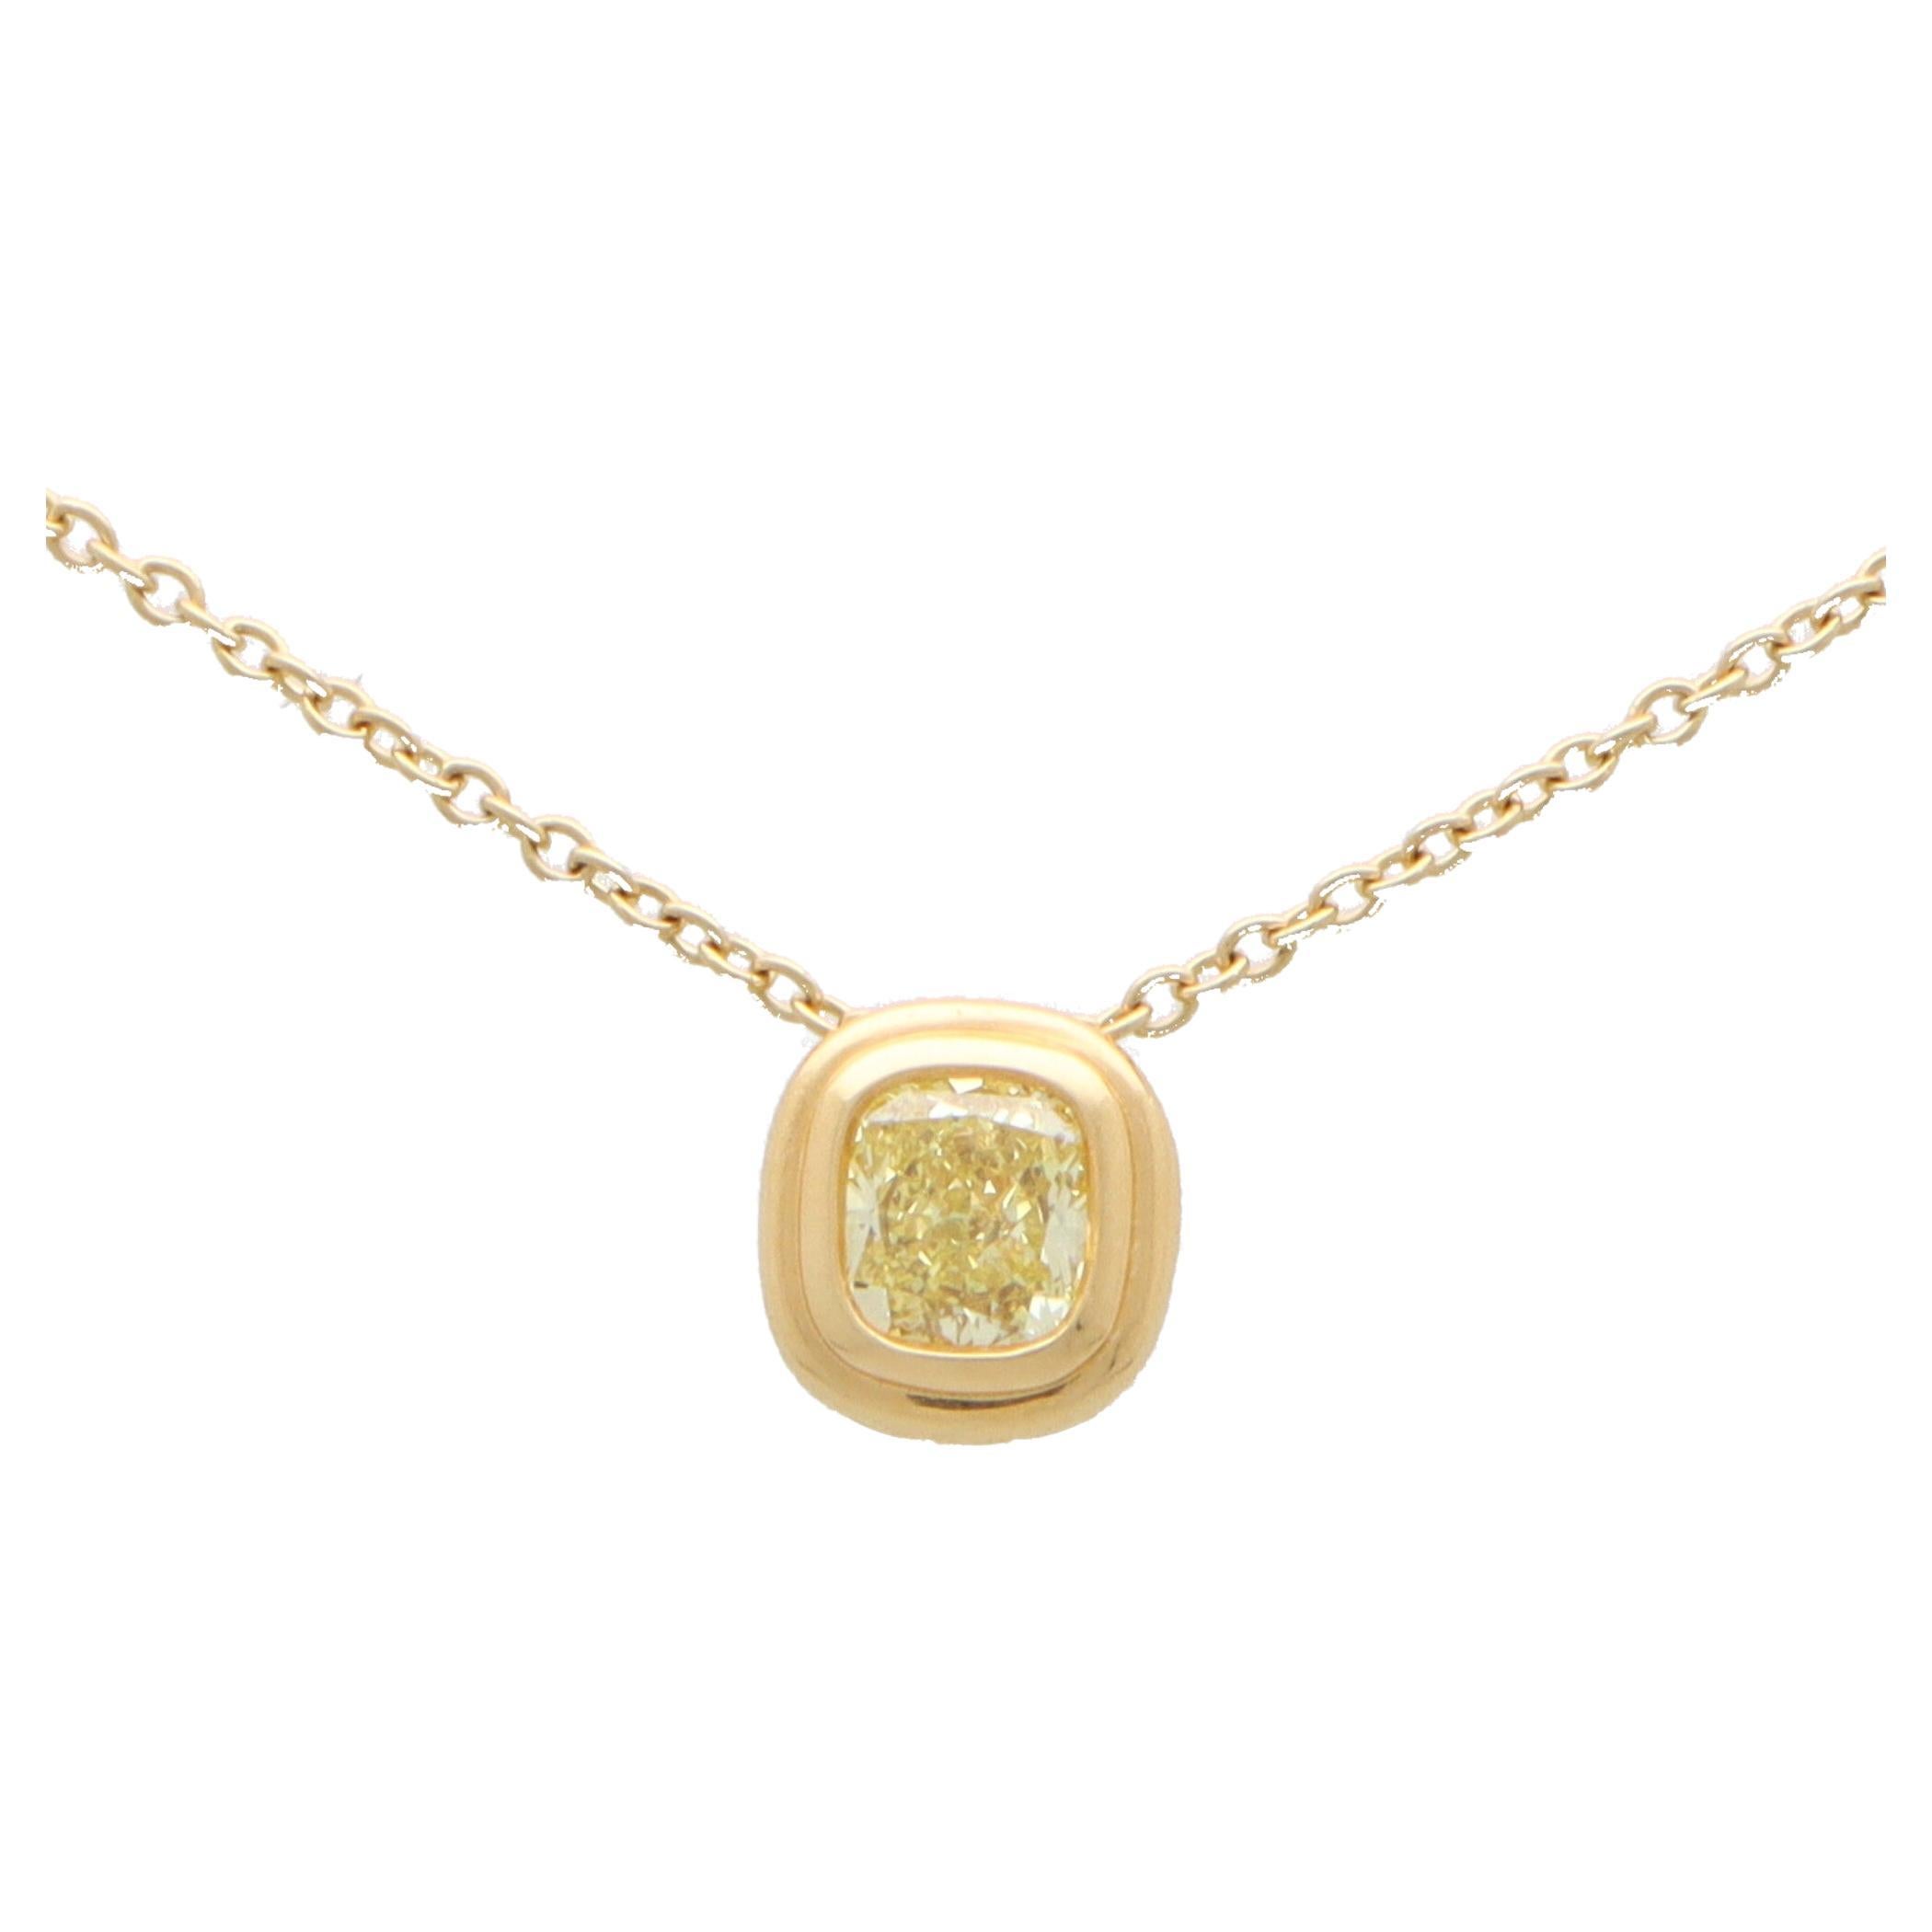 Vintage Tiffany & Co. Certified Fancy Intense Yellow Diamond Pendant in 18k Gold